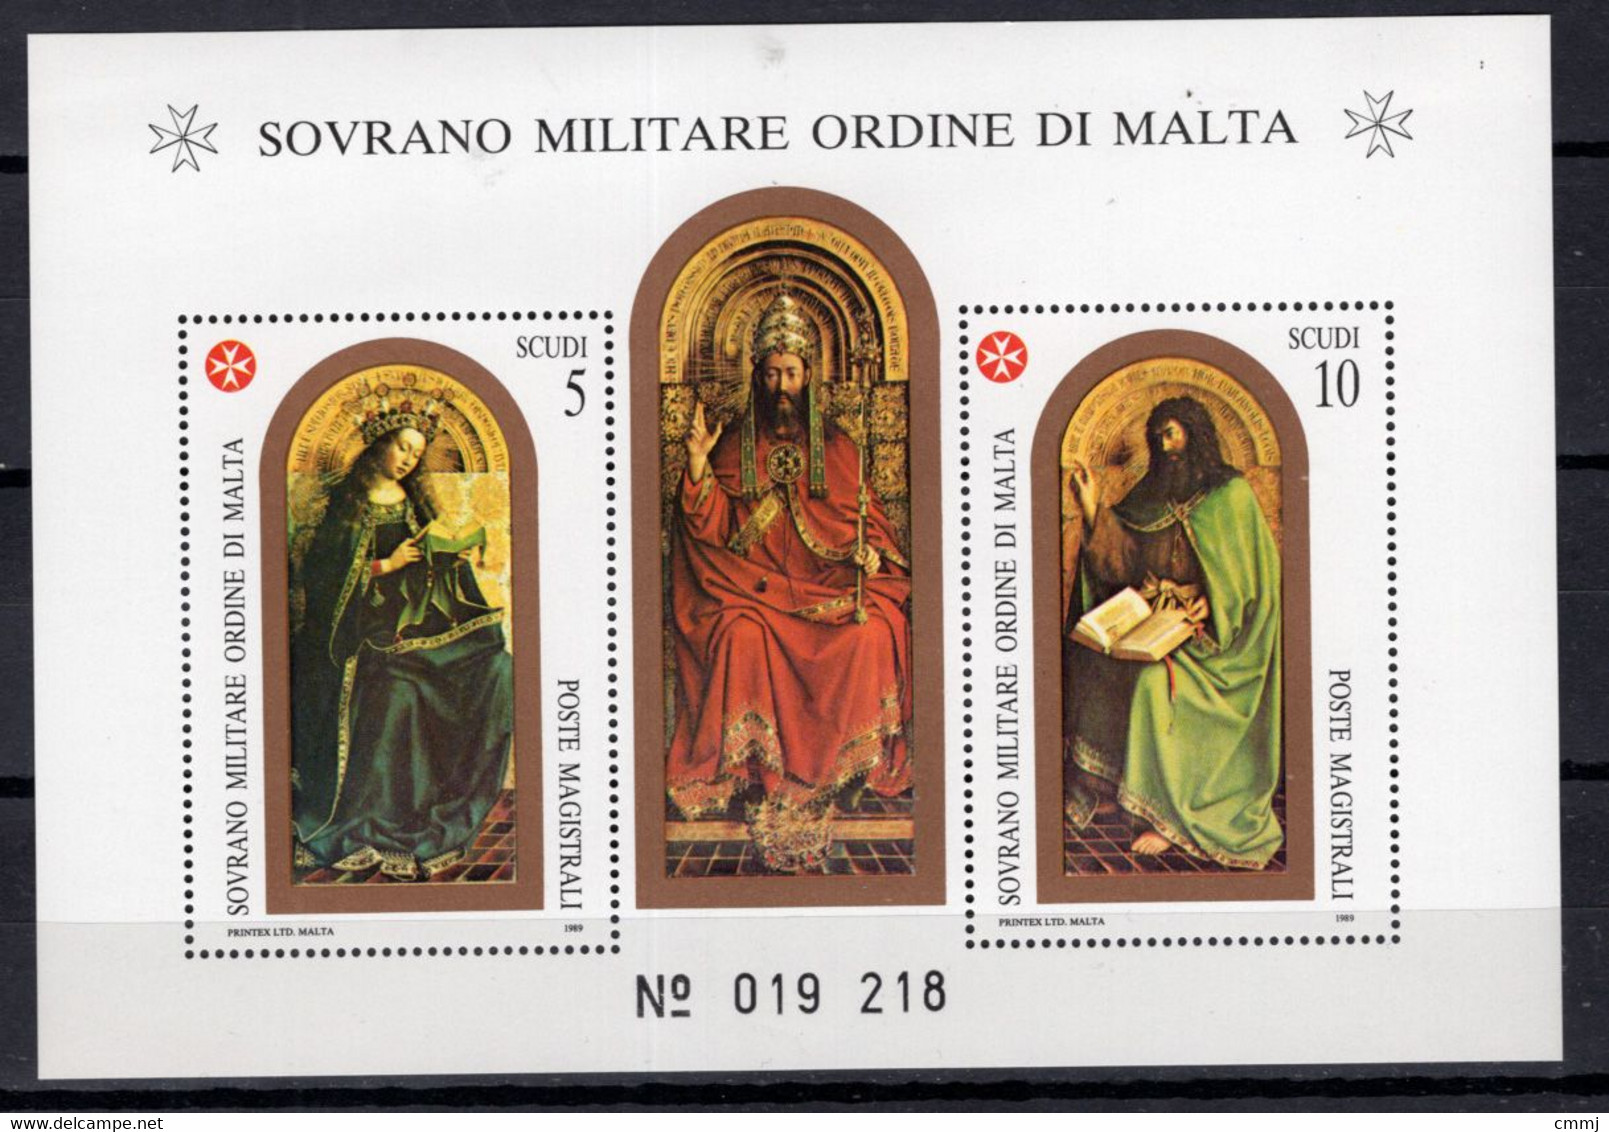 1989 - S.M.O.M. - Sovrano Militare Ordine Di Malta - Catg. UNIF.. BF 27 - NH - (VS...) - Sovrano Militare Ordine Di Malta